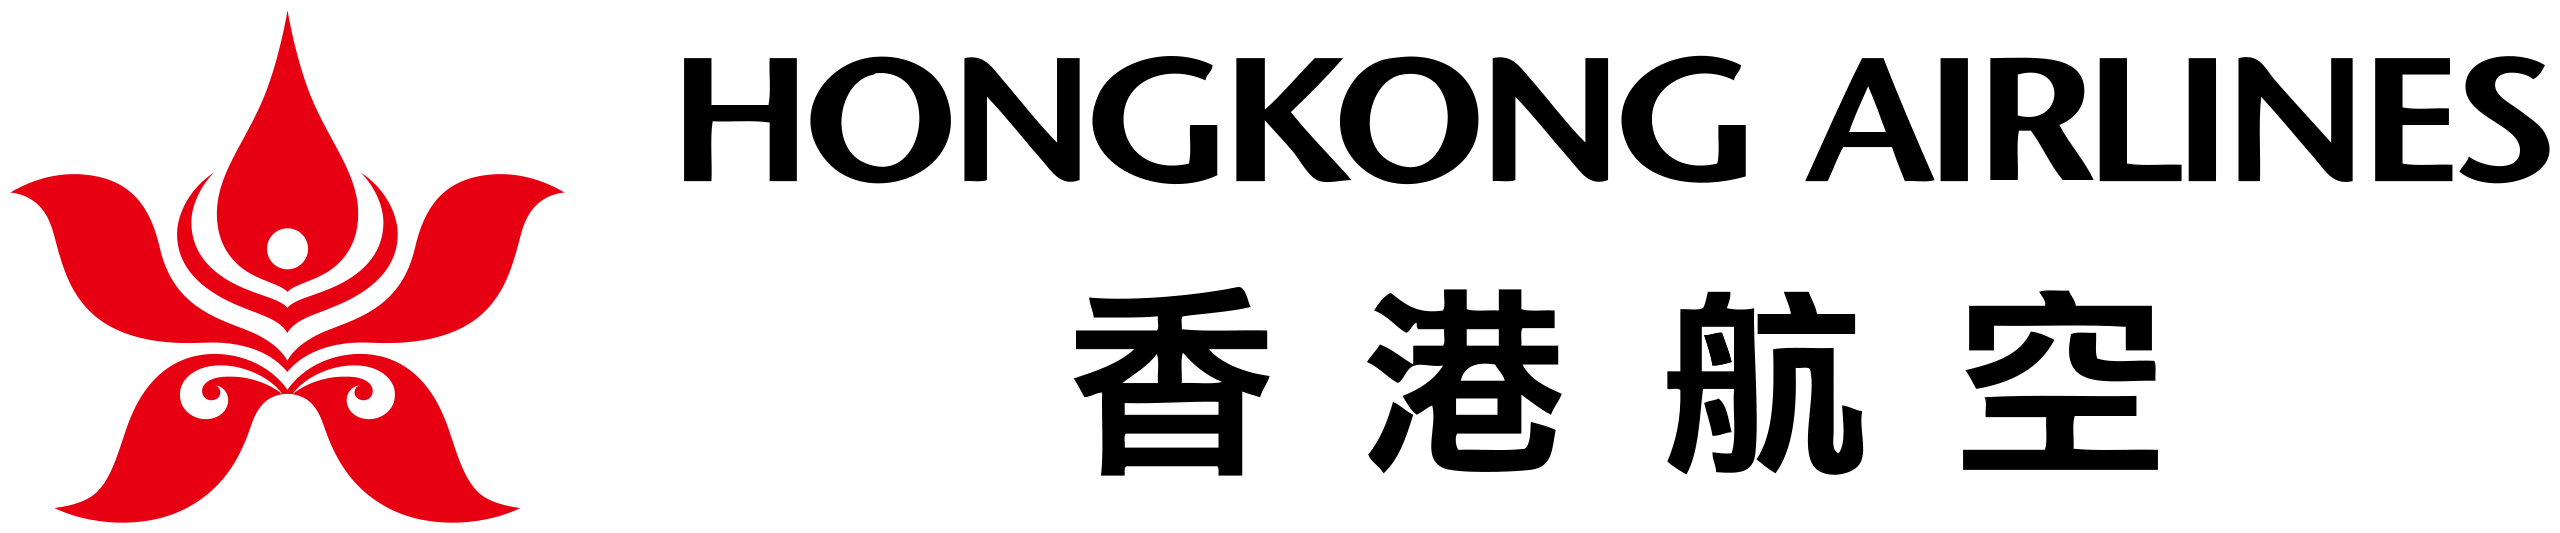 Hong Kong Airlines logo.